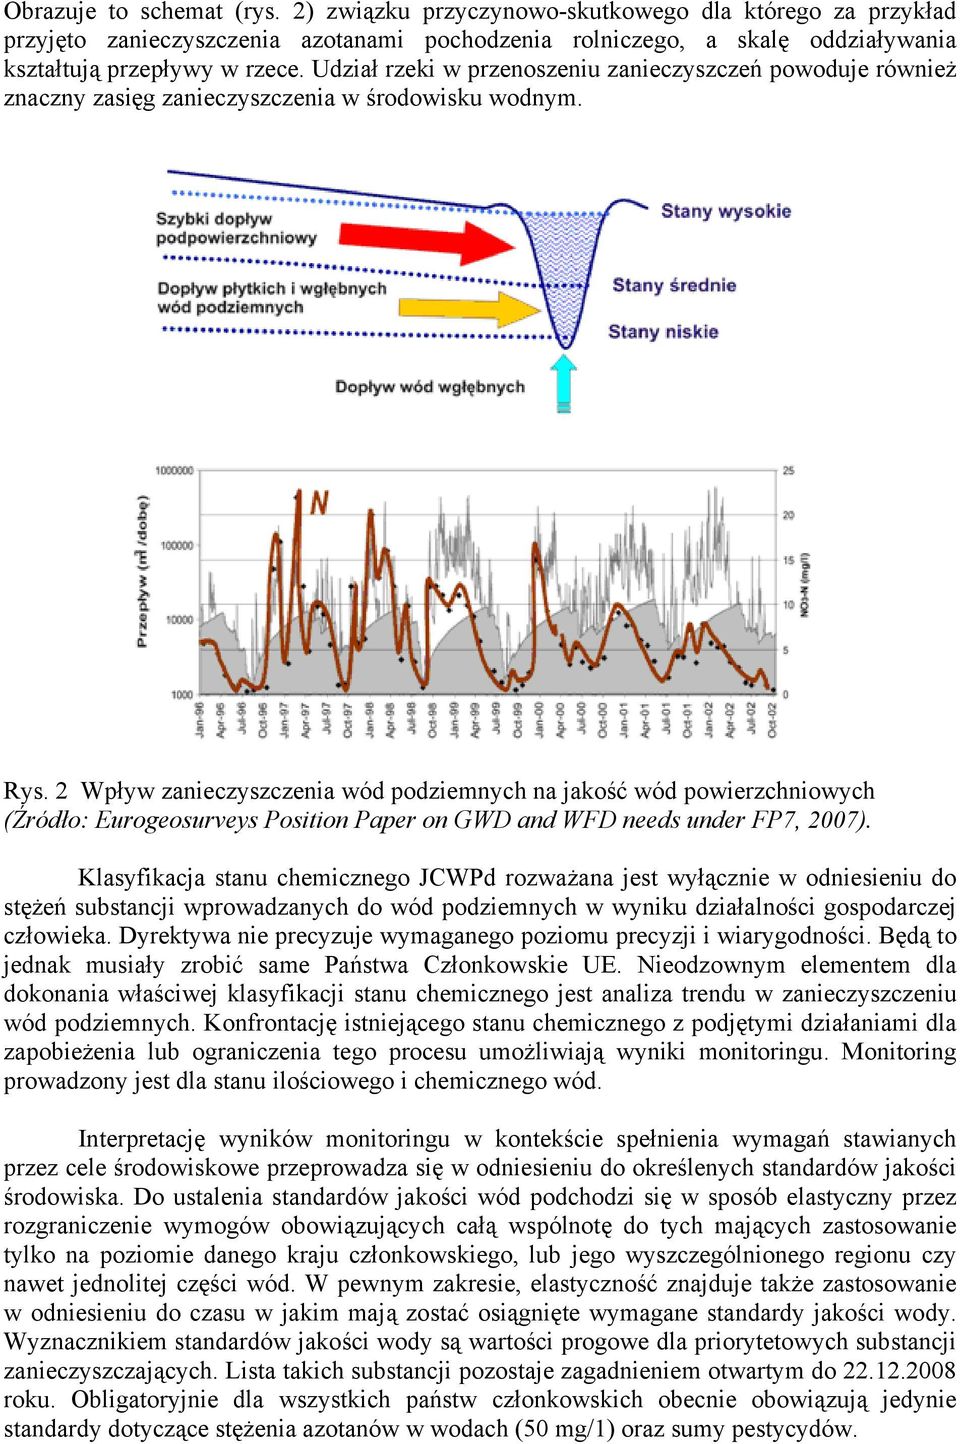 2 Wpływ zanieczyszczenia wód podziemnych na jakość wód powierzchniowych (Źródło: Eurogeosurveys Position Paper on GWD and WFD needs under FP7, 2007).